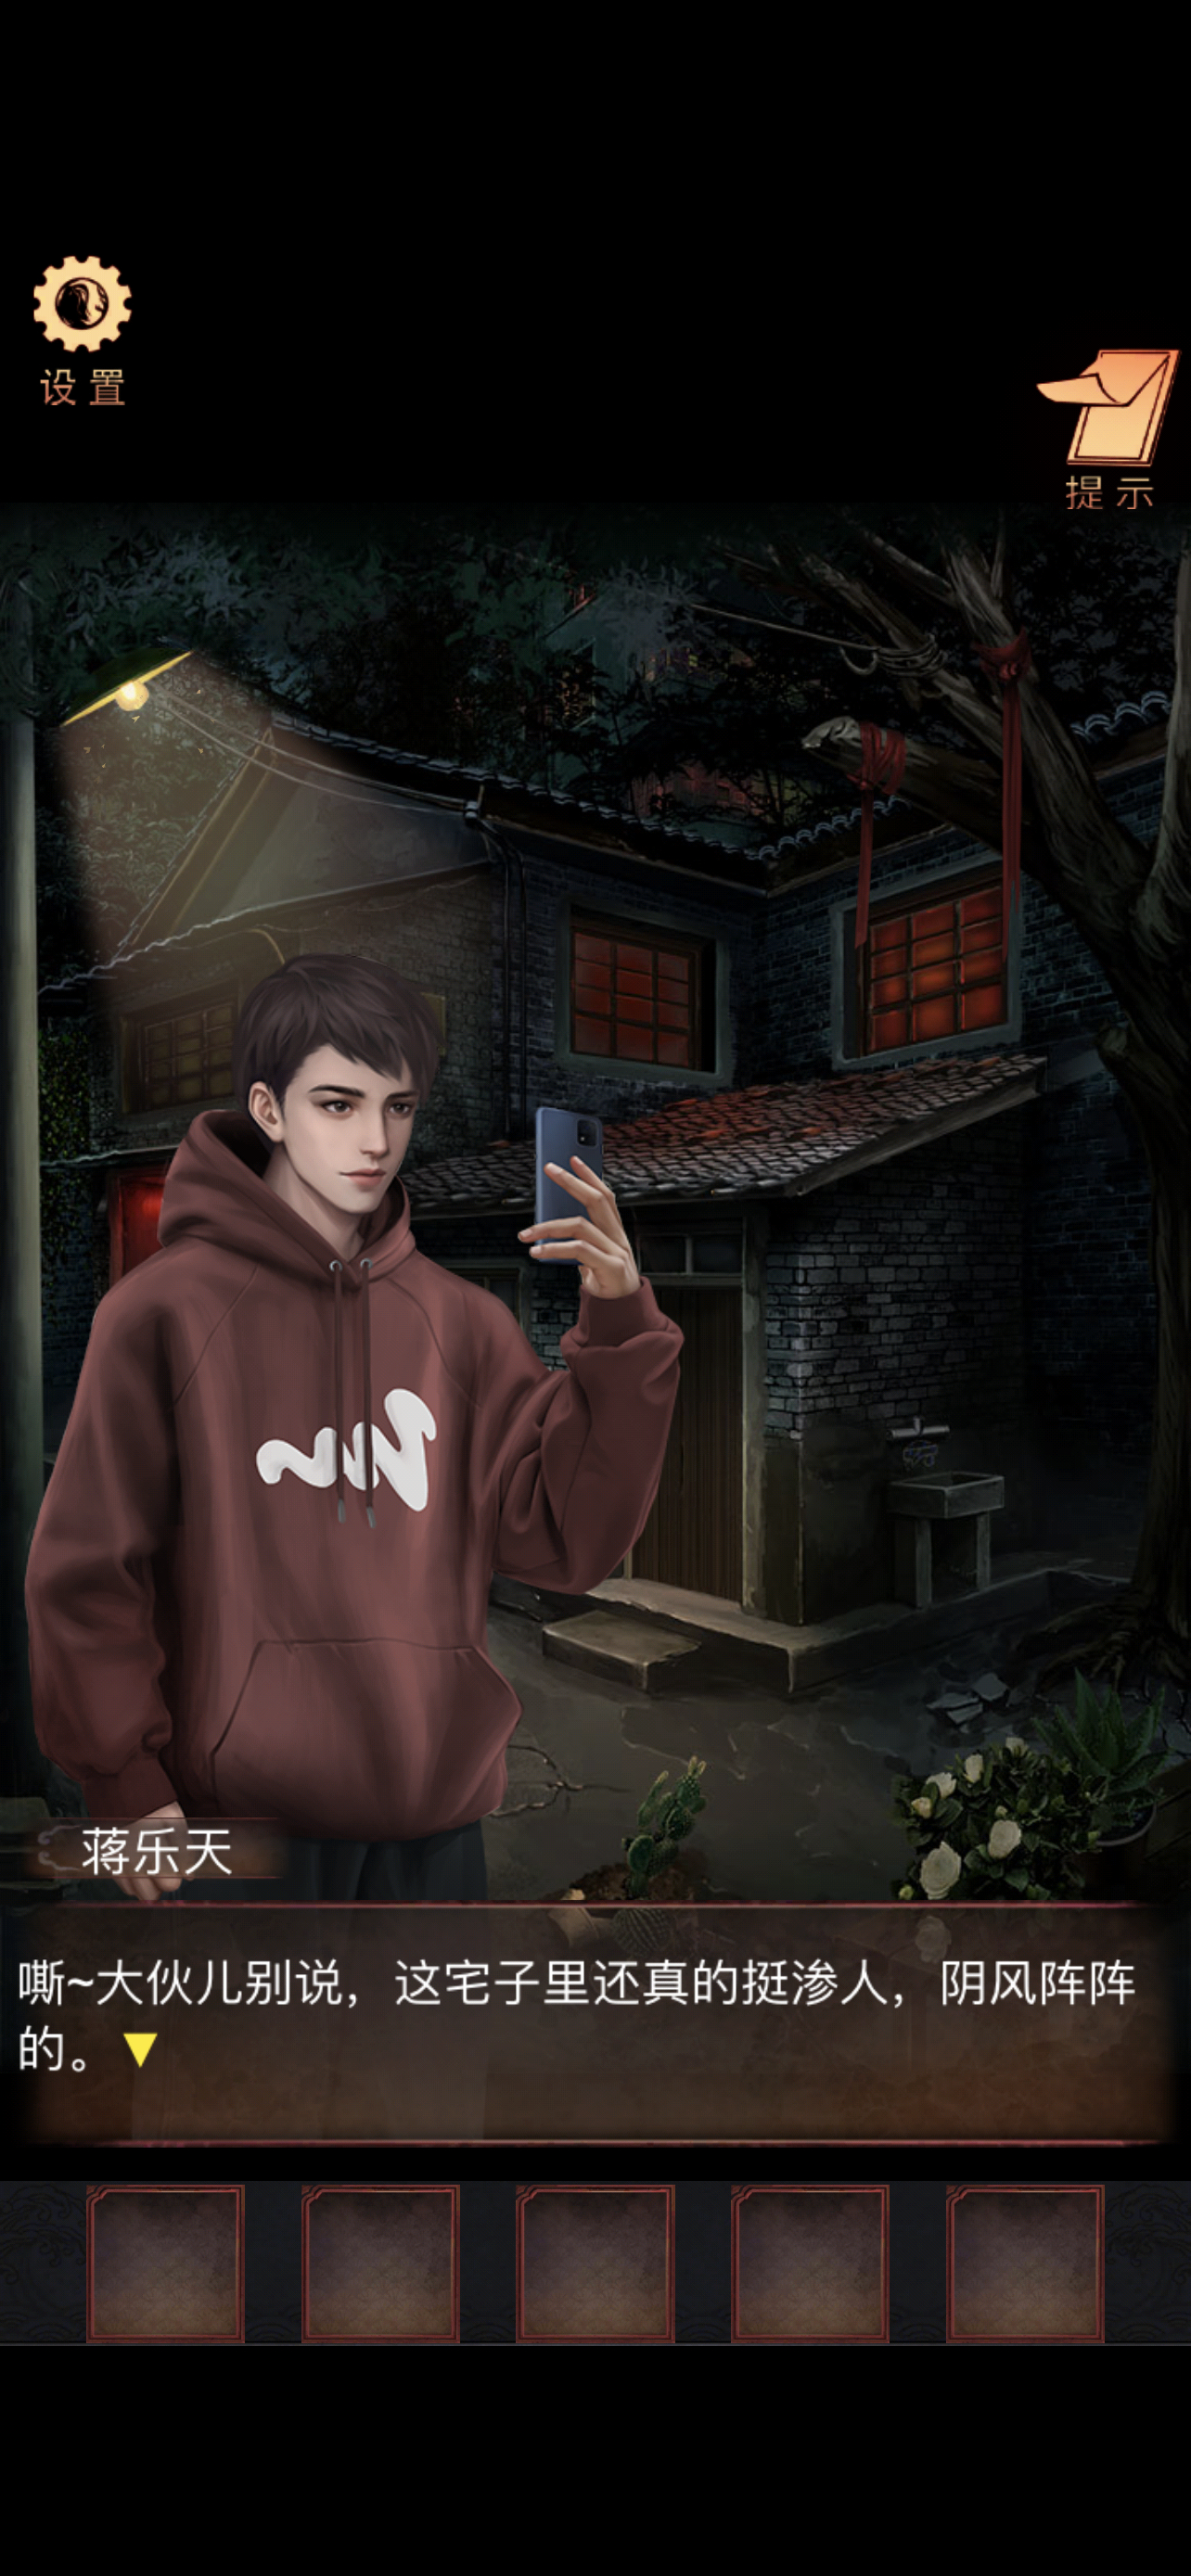 #阴阳锅2同心劫# iOS发布了，于是半夜玩恐怖游戏我也是没谁了[苦涩]男青年加